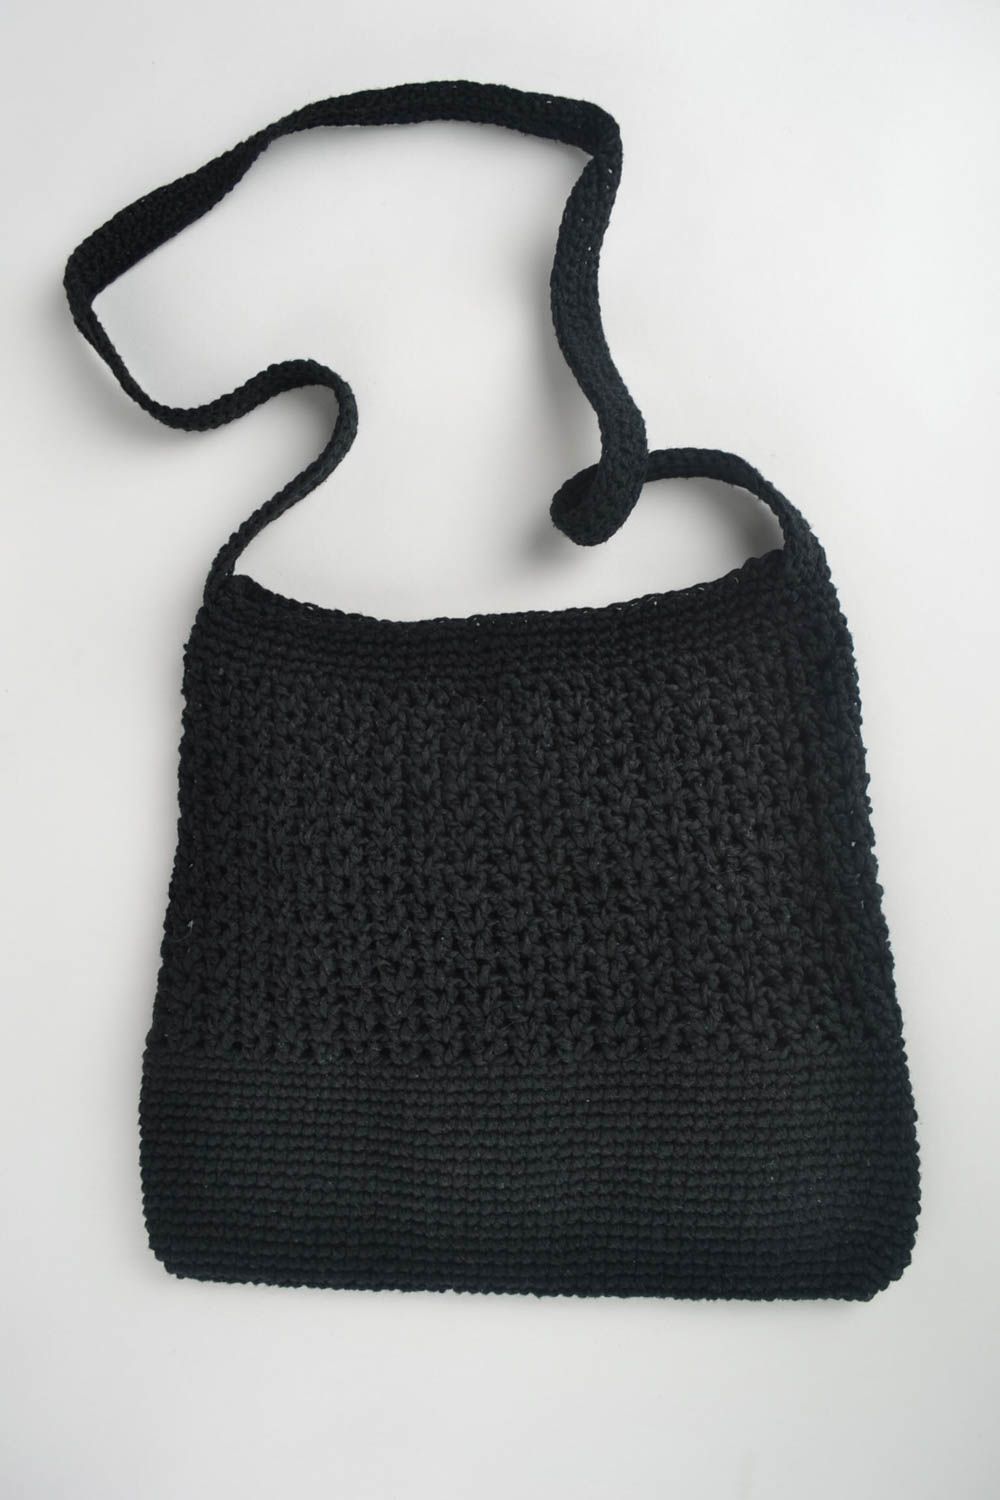 Sac noir tricoté coton fait main Accessoire femme avec fleurs Cadeau original photo 3